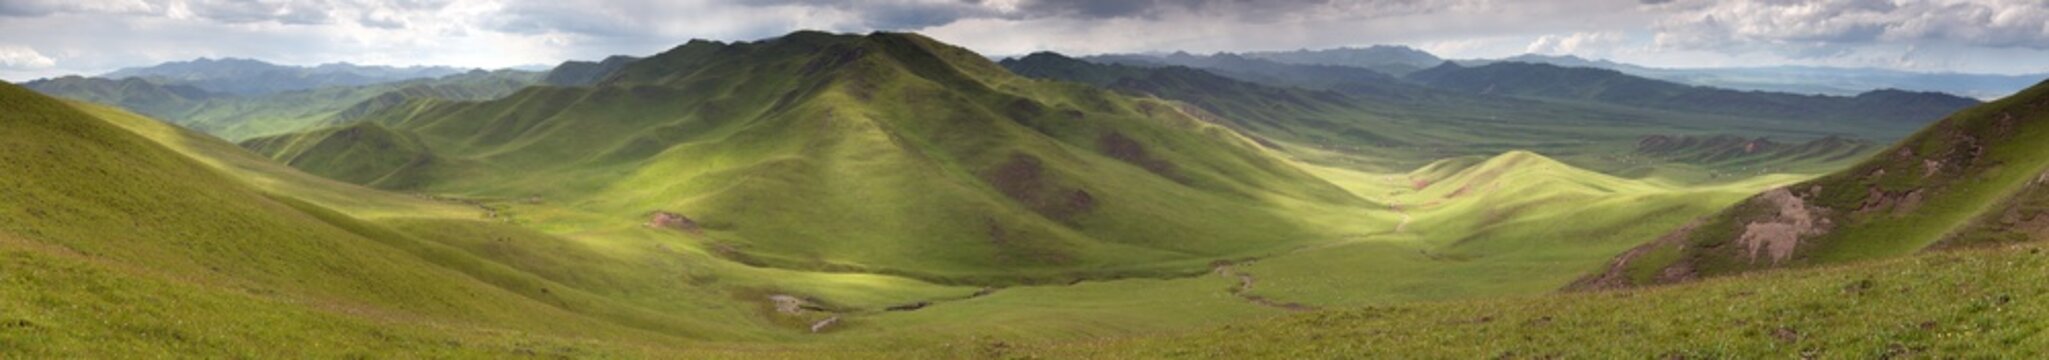 Fototapeta Panaramic view of green mountains - East Tibet